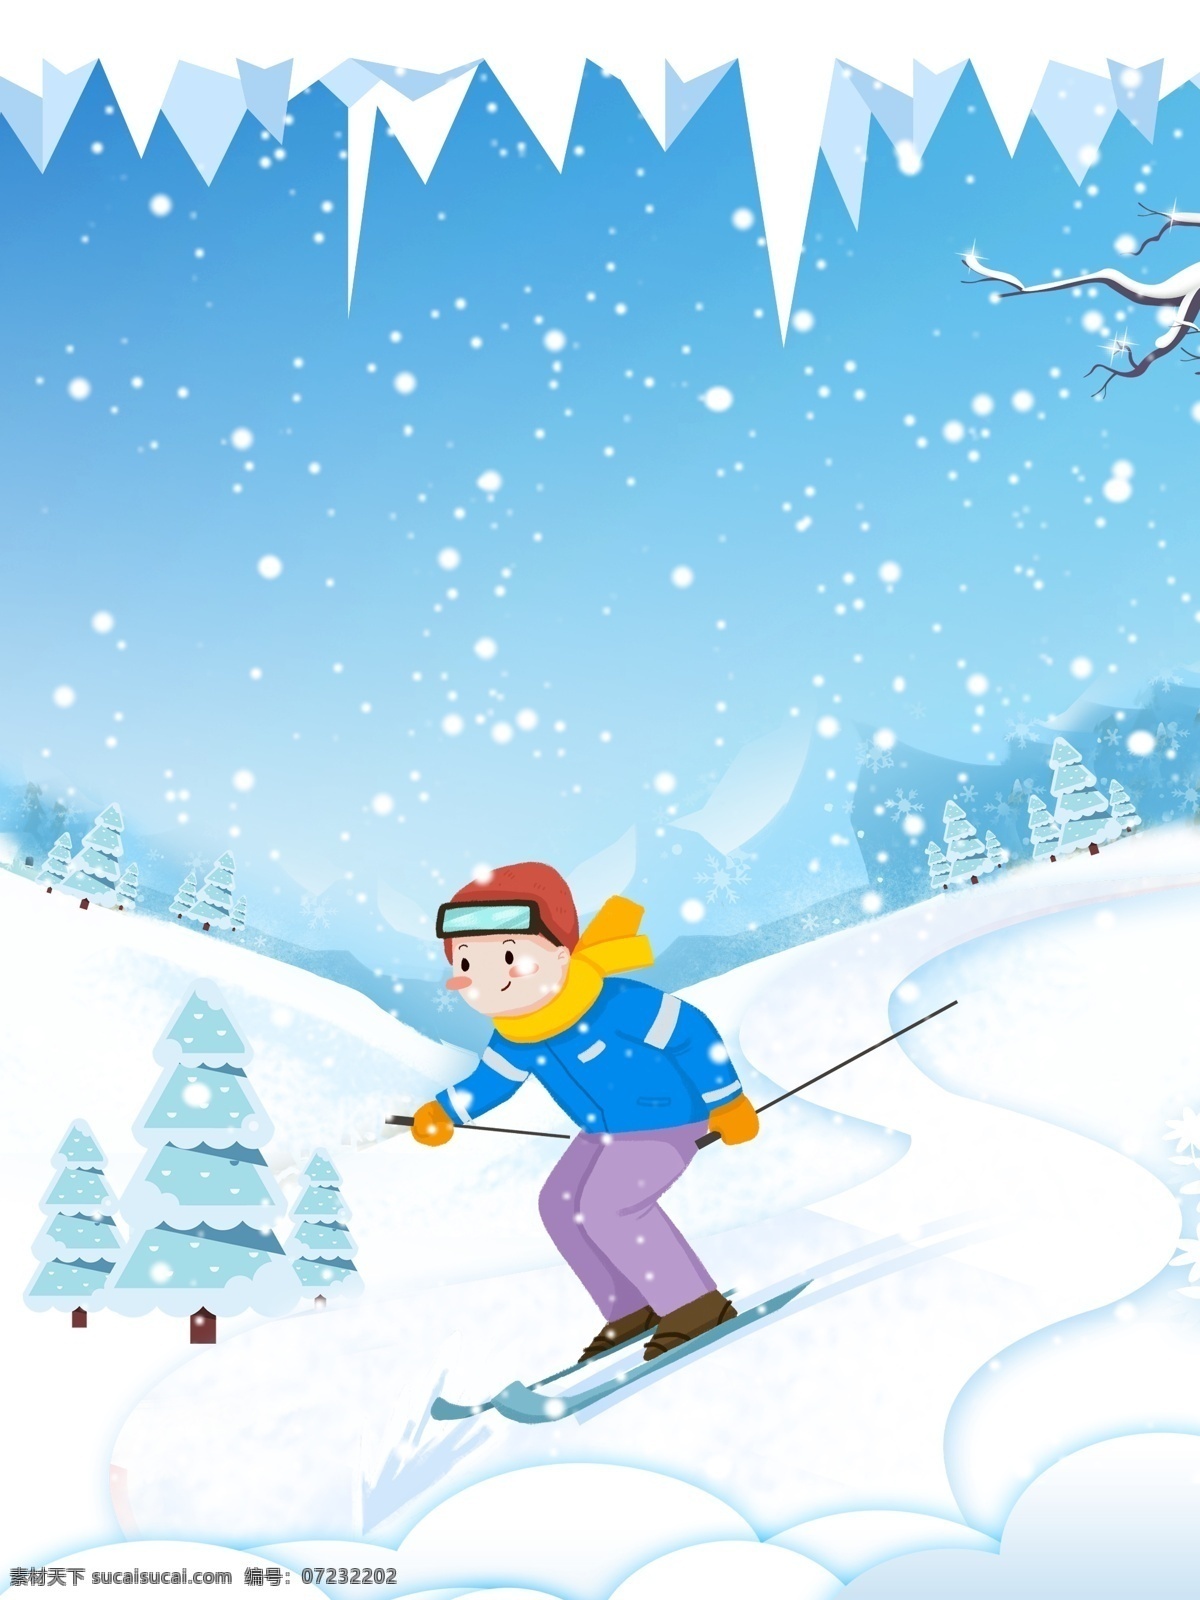 清新 少儿 滑雪 背景 唯美 简约 蓝色 雪地 冬天 冬至背景 下雪 冬至节气 传统节气 24节气冬天 少儿滑雪背景